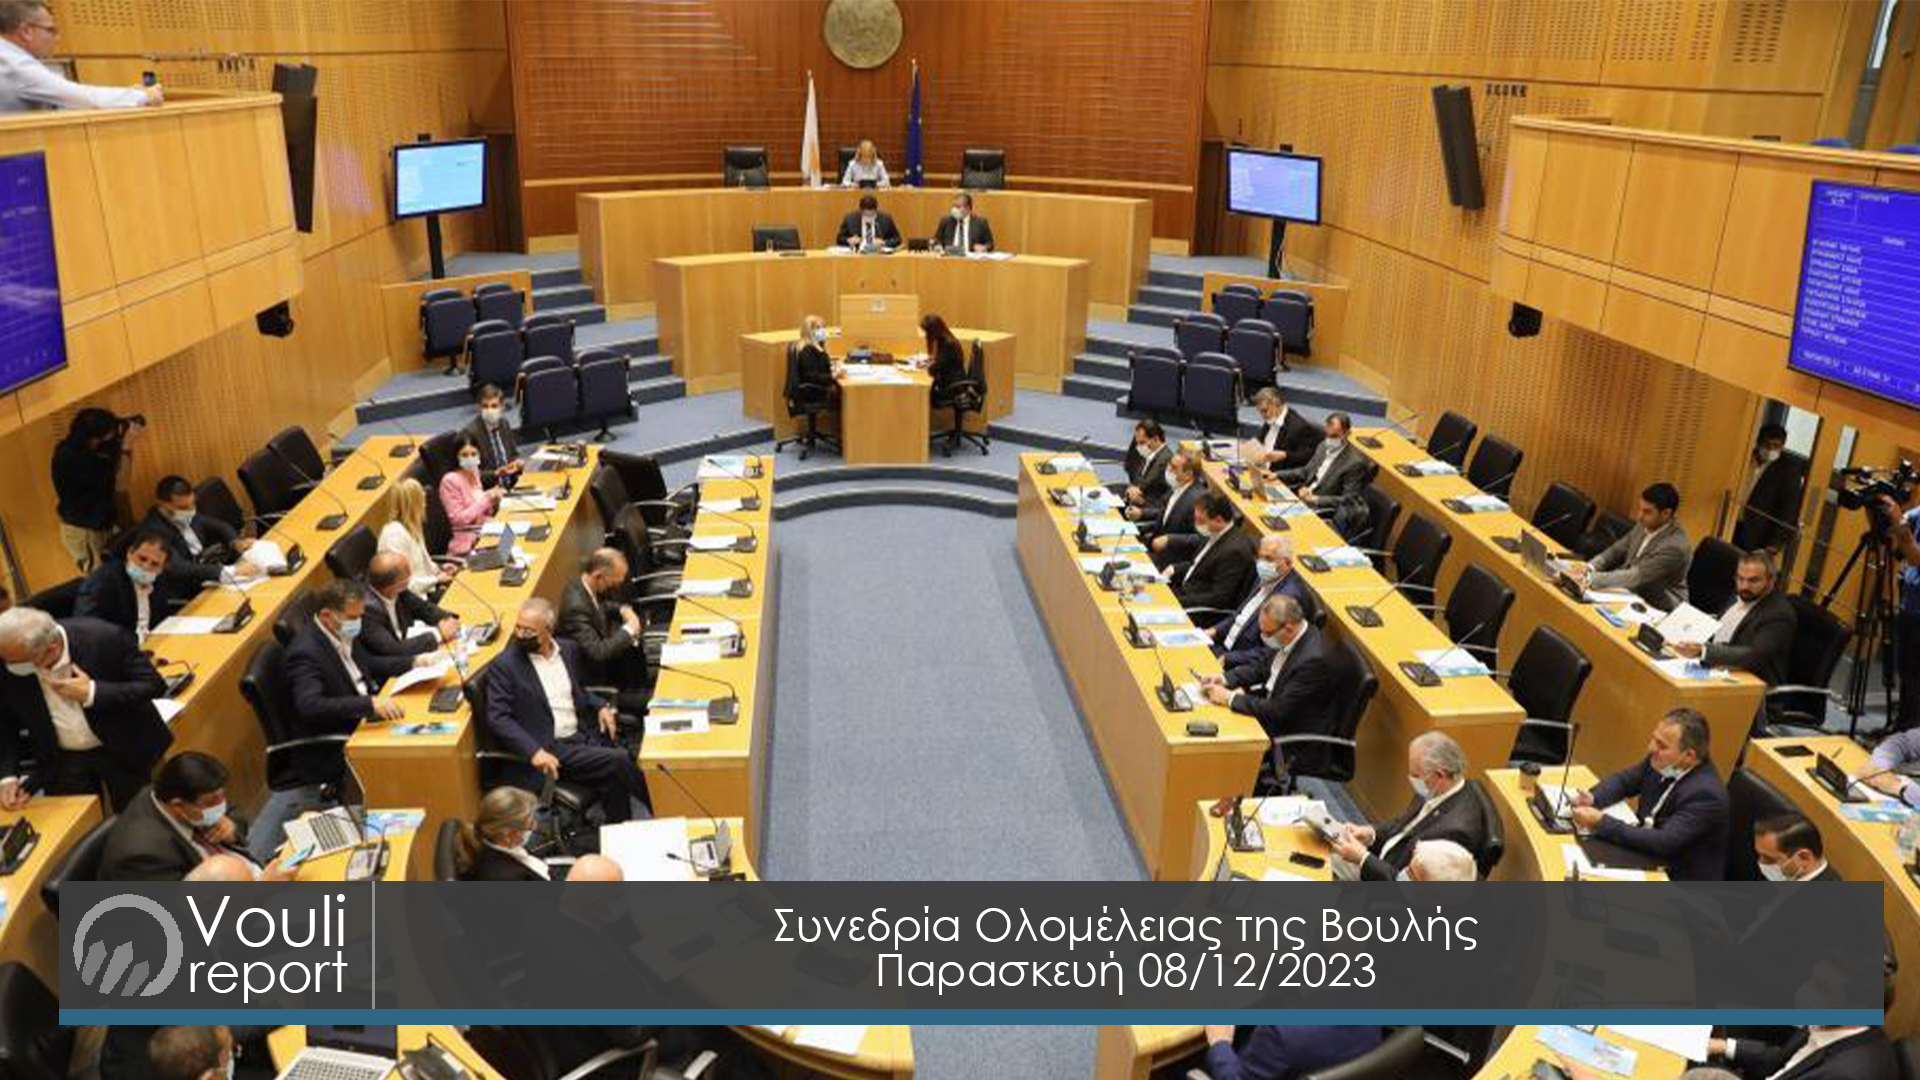 Συνεδρία Ολομέλειας της Βουλής | 8 Δεκεμβρίου 2023